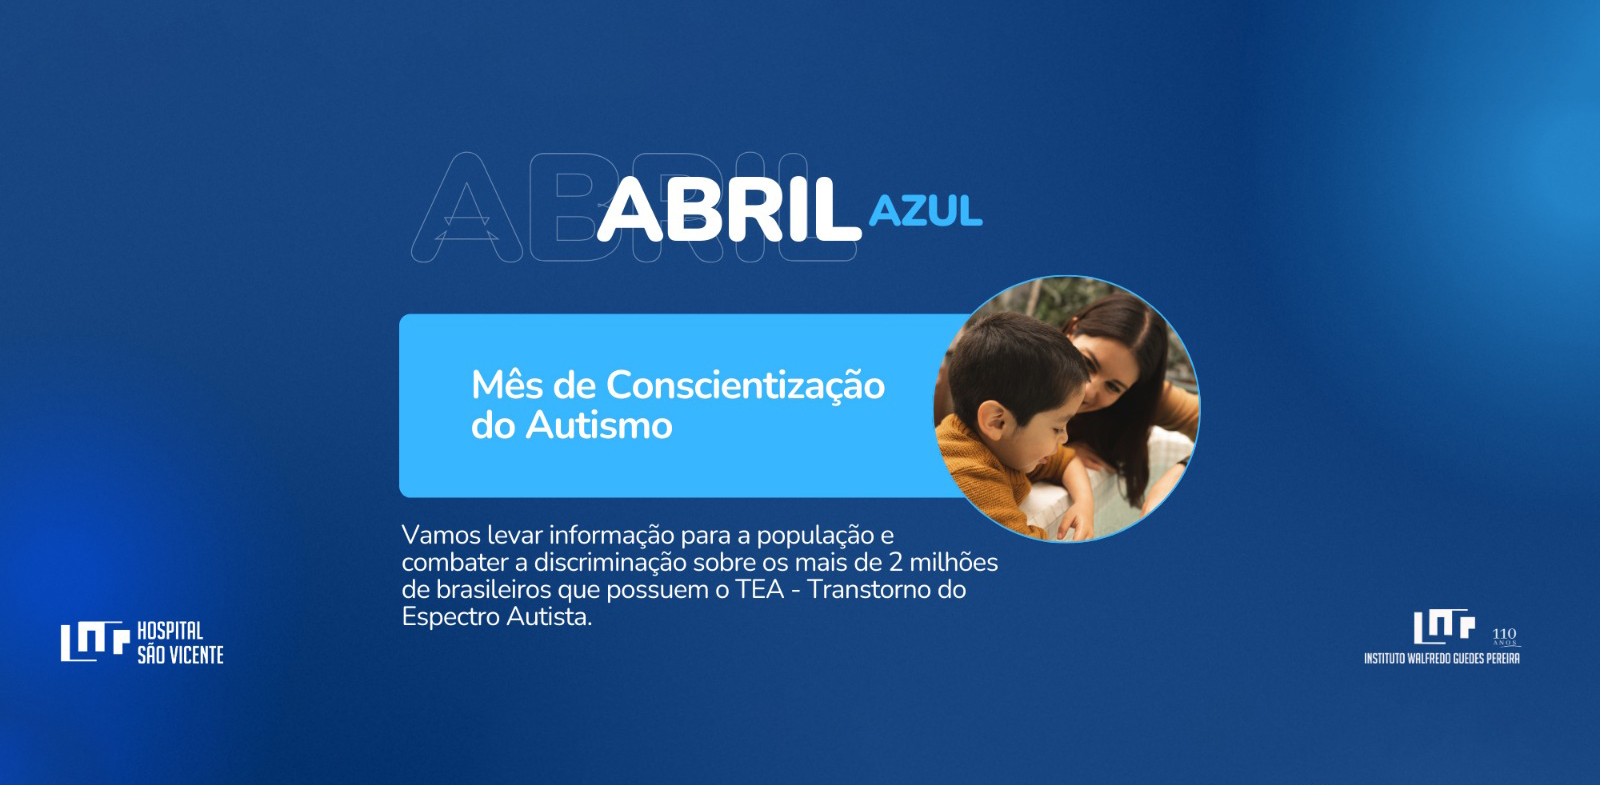 Abril Azul - Mês de conscientização do Autismo